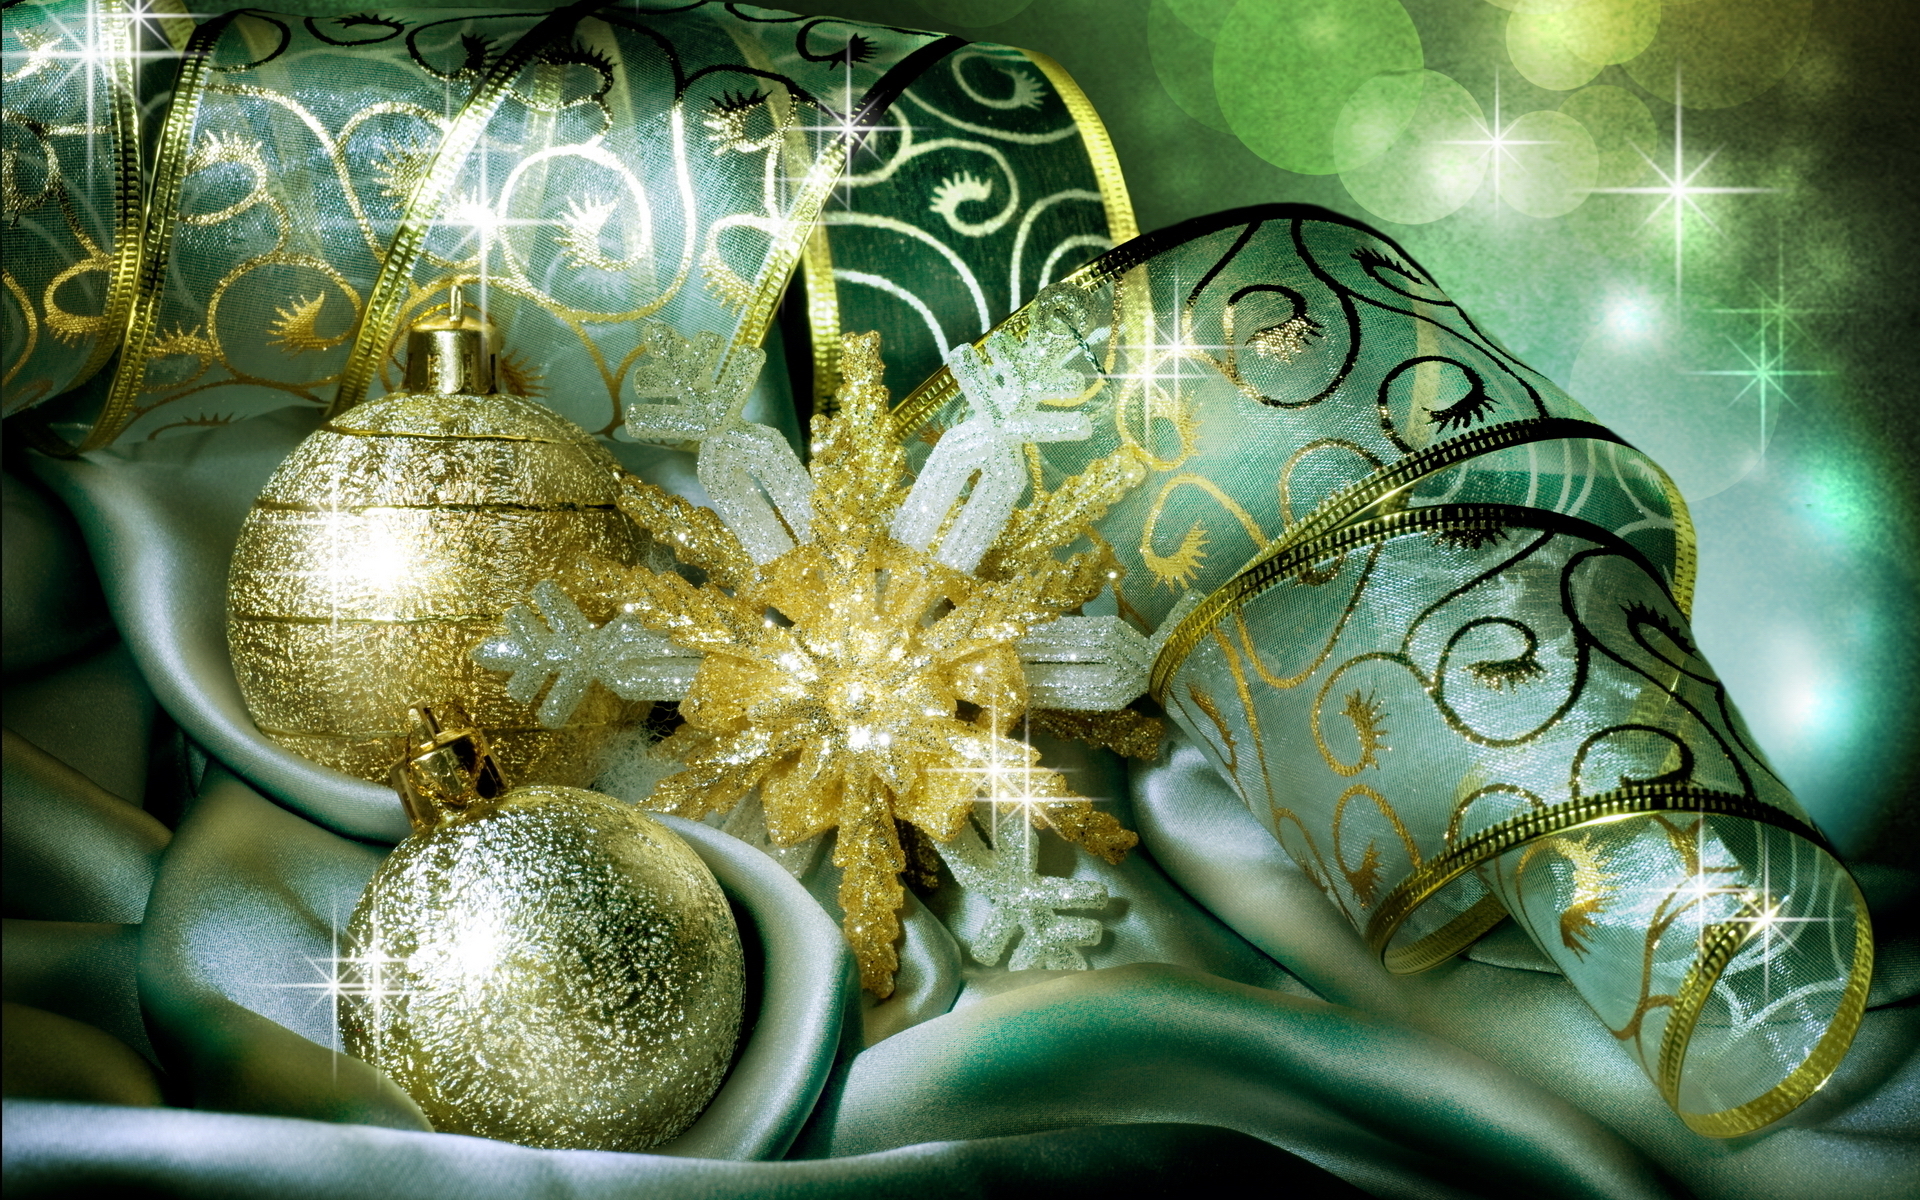 Скачать обои бесплатно Рождество (Christmas Xmas), Праздники, Игрушки, Новый Год (New Year) картинка на рабочий стол ПК